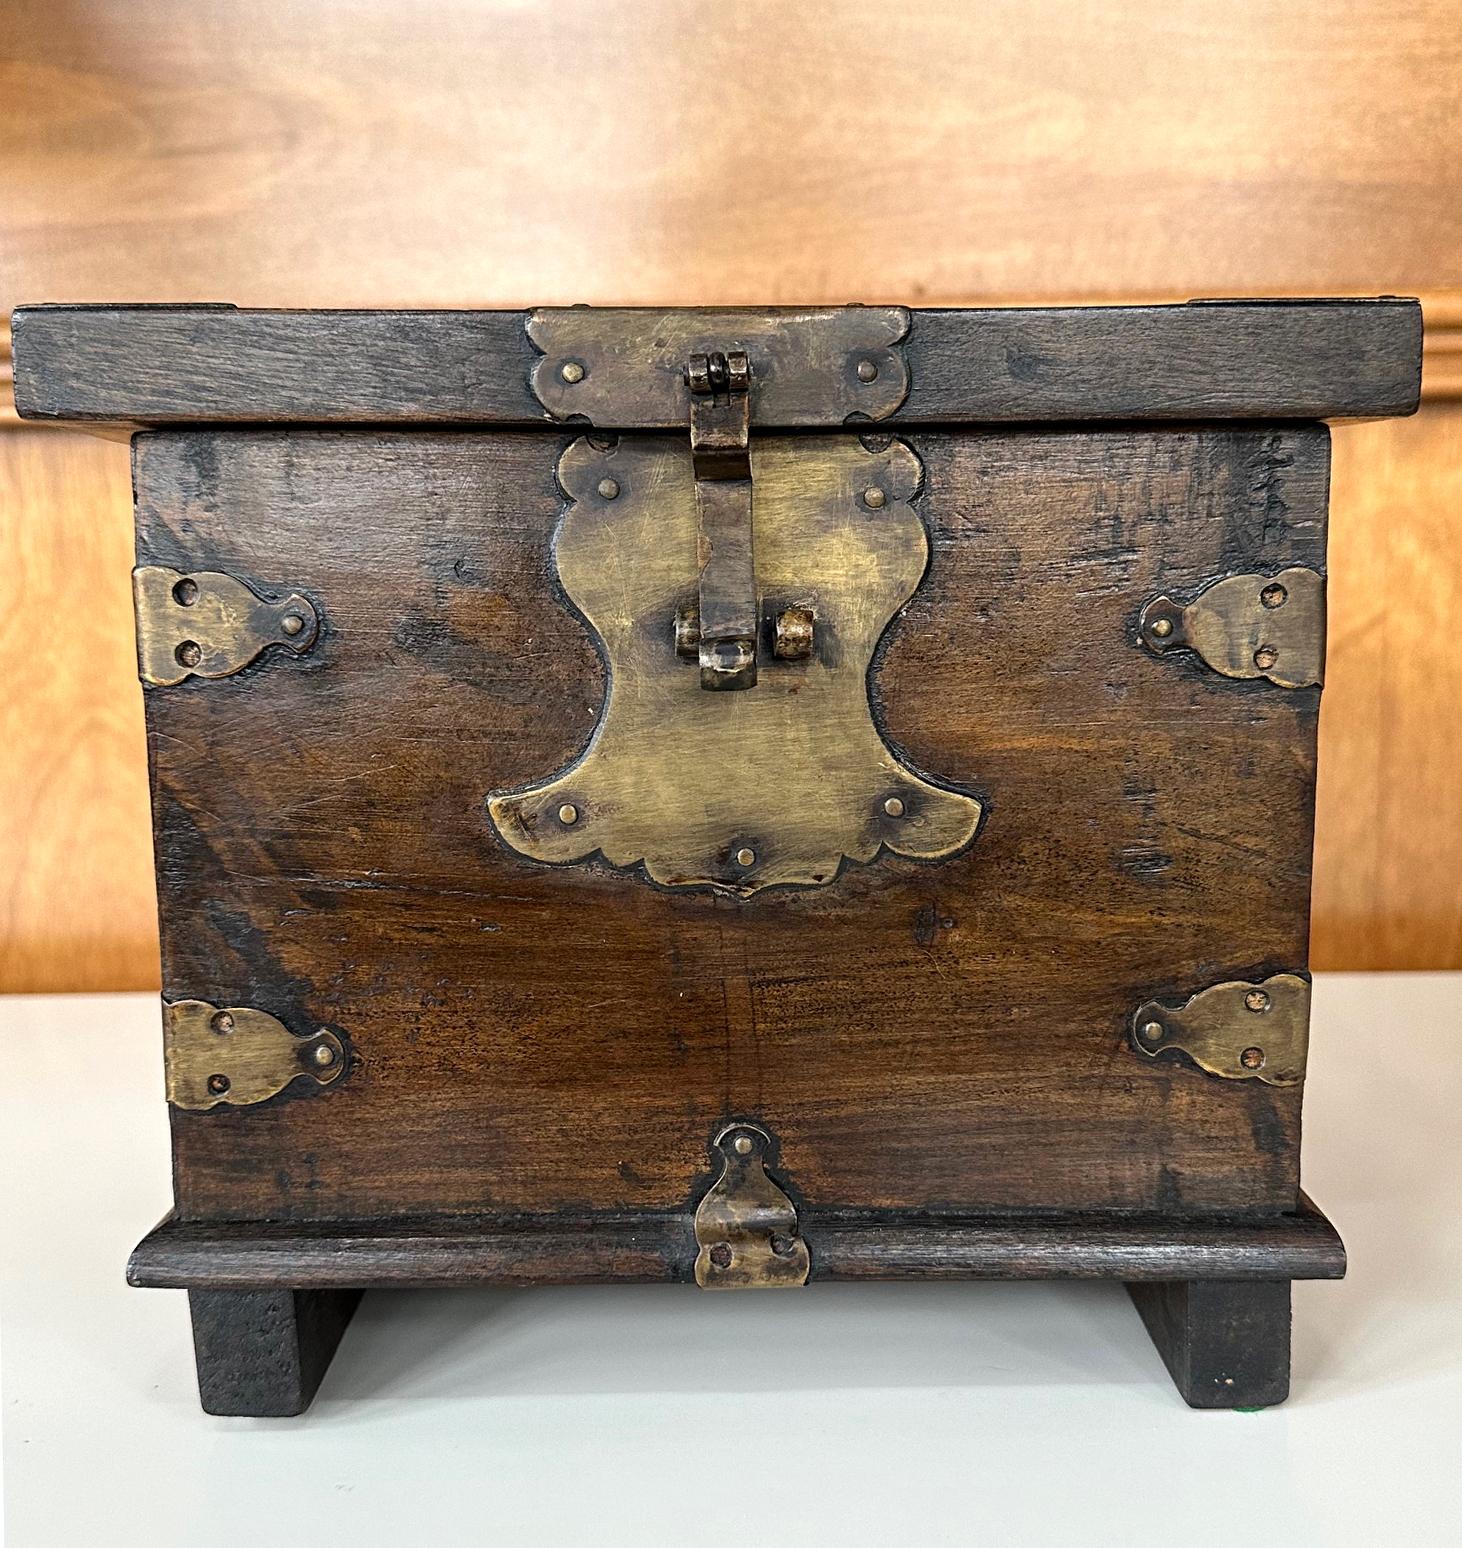 Eine kleine koreanische antike Kiste aus dem späten 19. Jahrhundert der Joseon-Dynastie. Der Kasten in quadratischer Form wurde mit dicken Hartholzbrettern an allen Seiten (anscheinend Ulme) gebaut, mit einem auffälligen Deckel mit Überhang und zwei